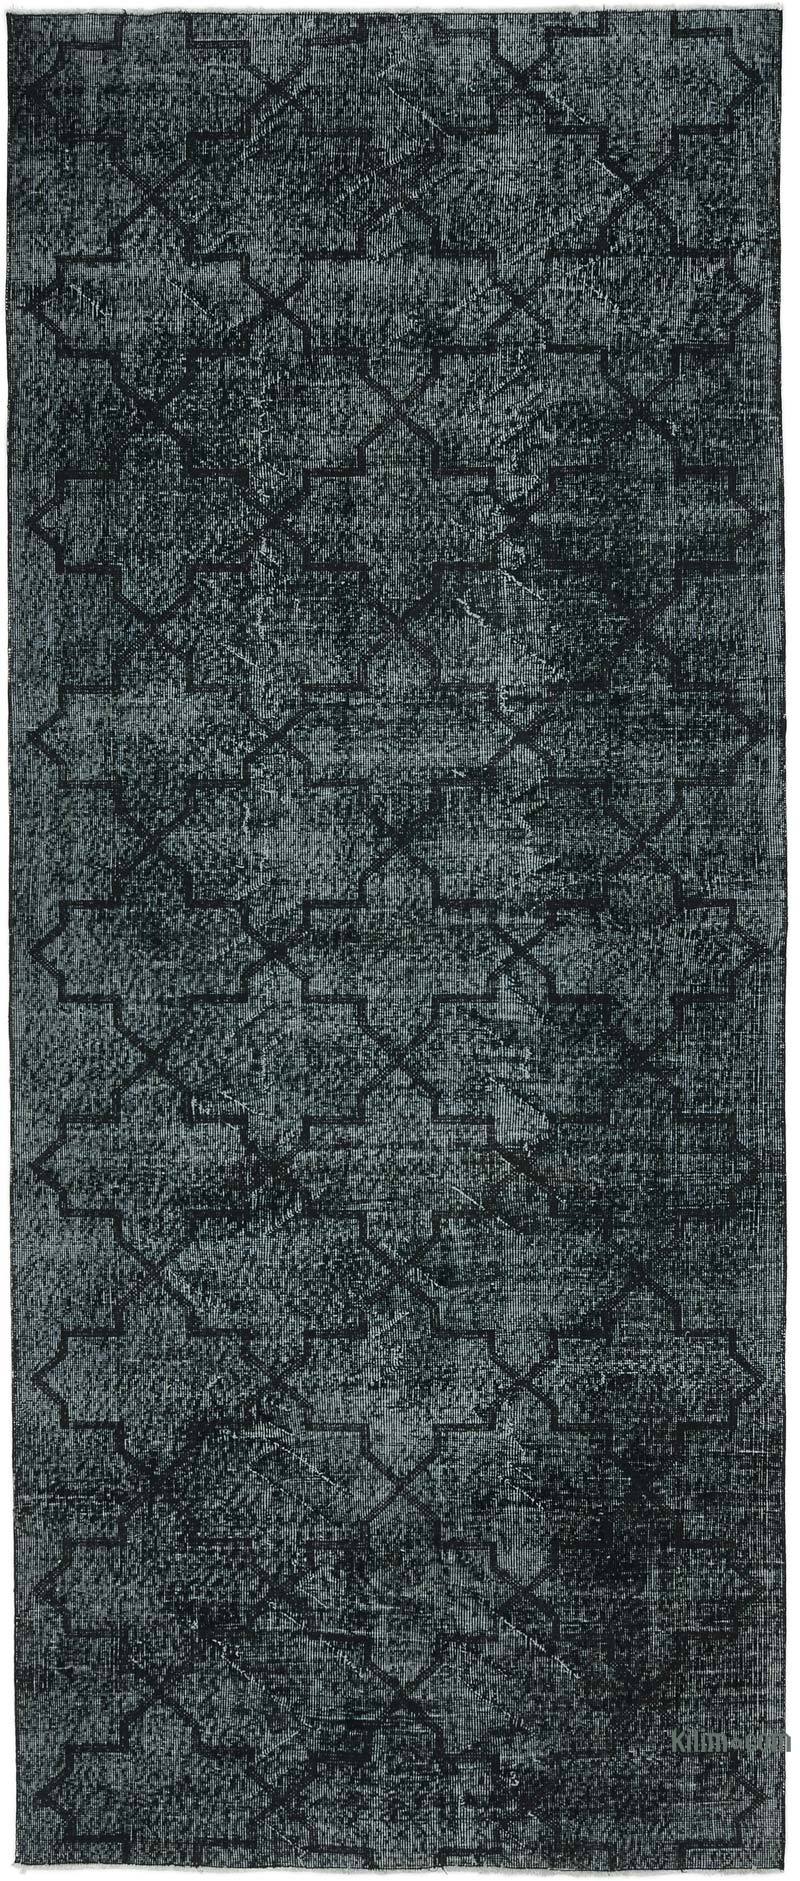 Siyah İşlemeli ve Boyalı El Dokuma Vintage Halı - 144 cm x 348 cm - K0038652